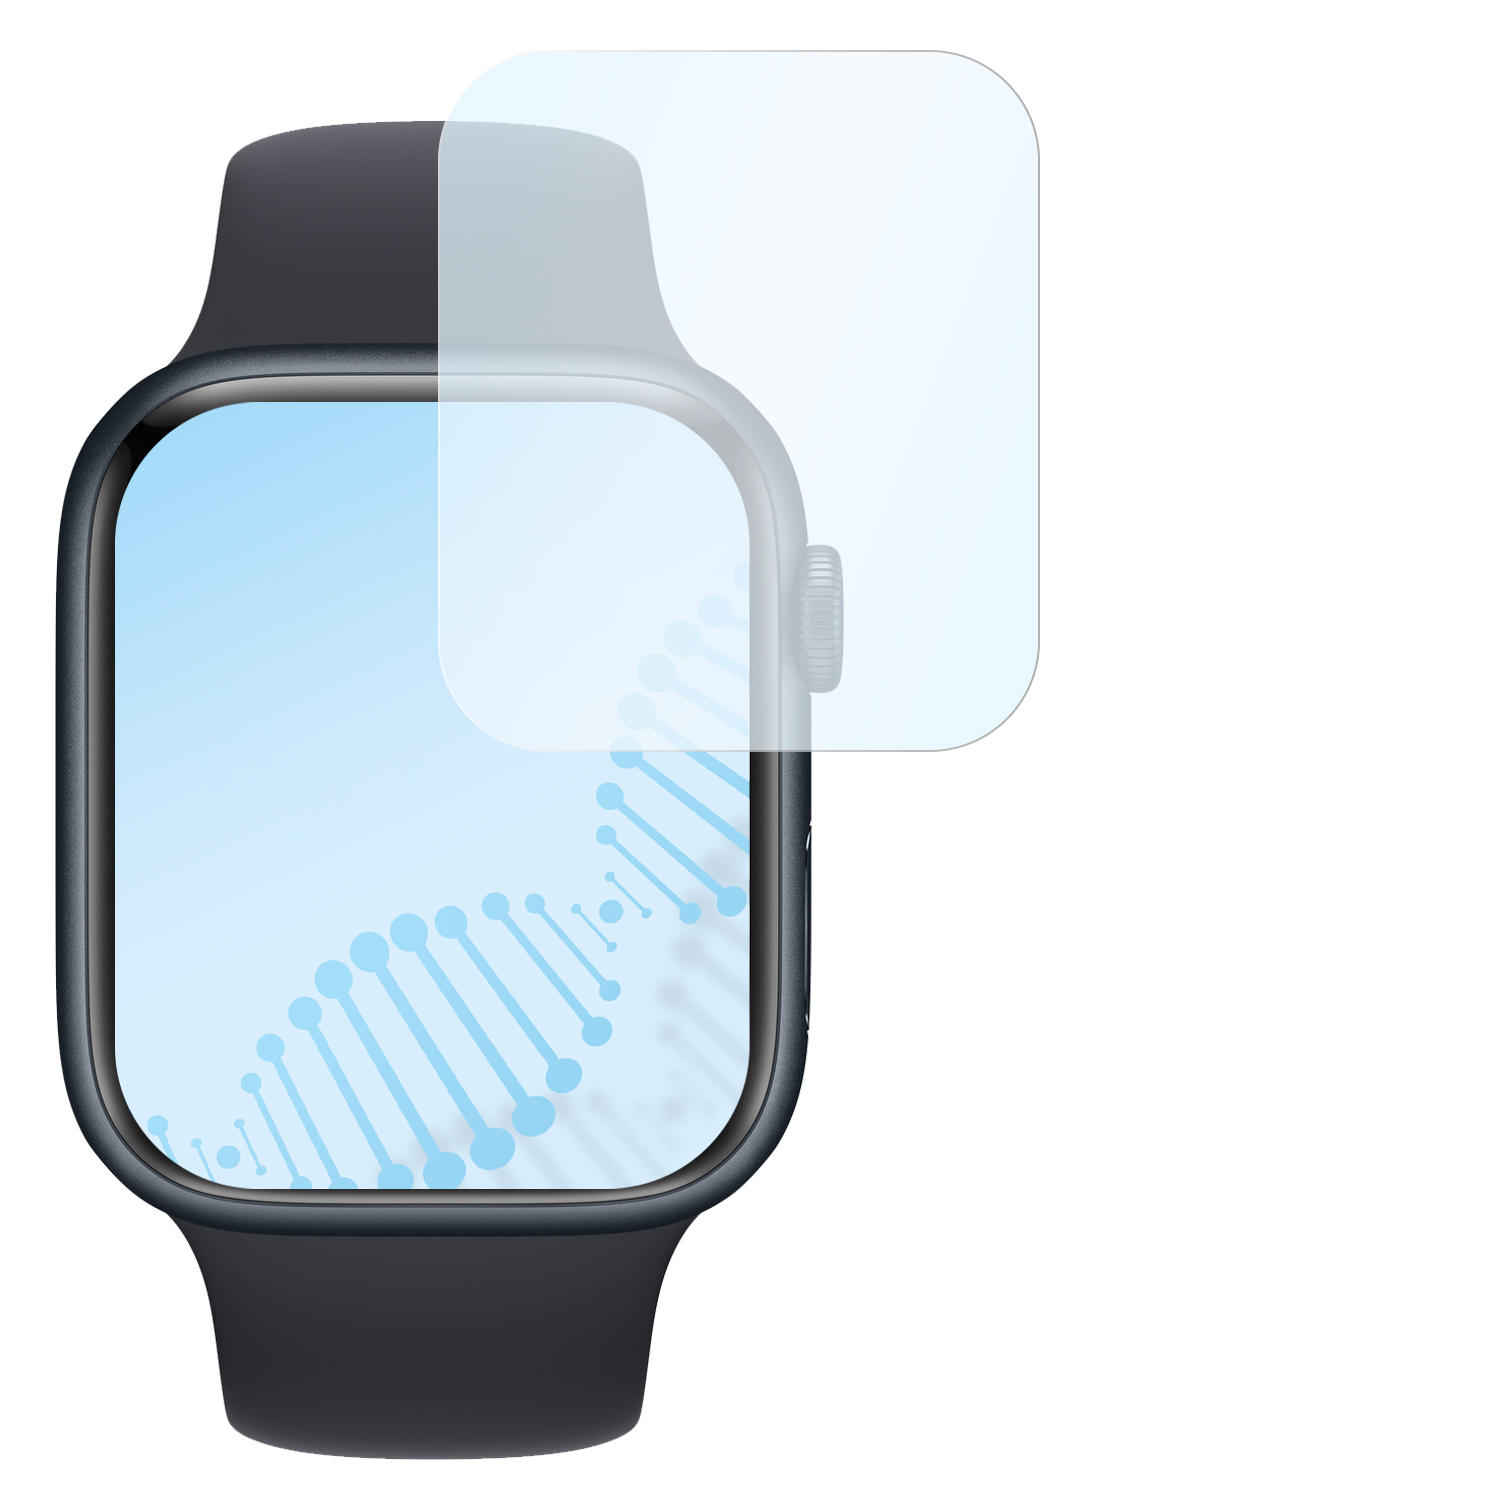 8 Displayschutz(für mm)) Hybridglasfolie | antibakterielle flexible Watch Series (45 Series (45mm) Apple SLABO Watch 7